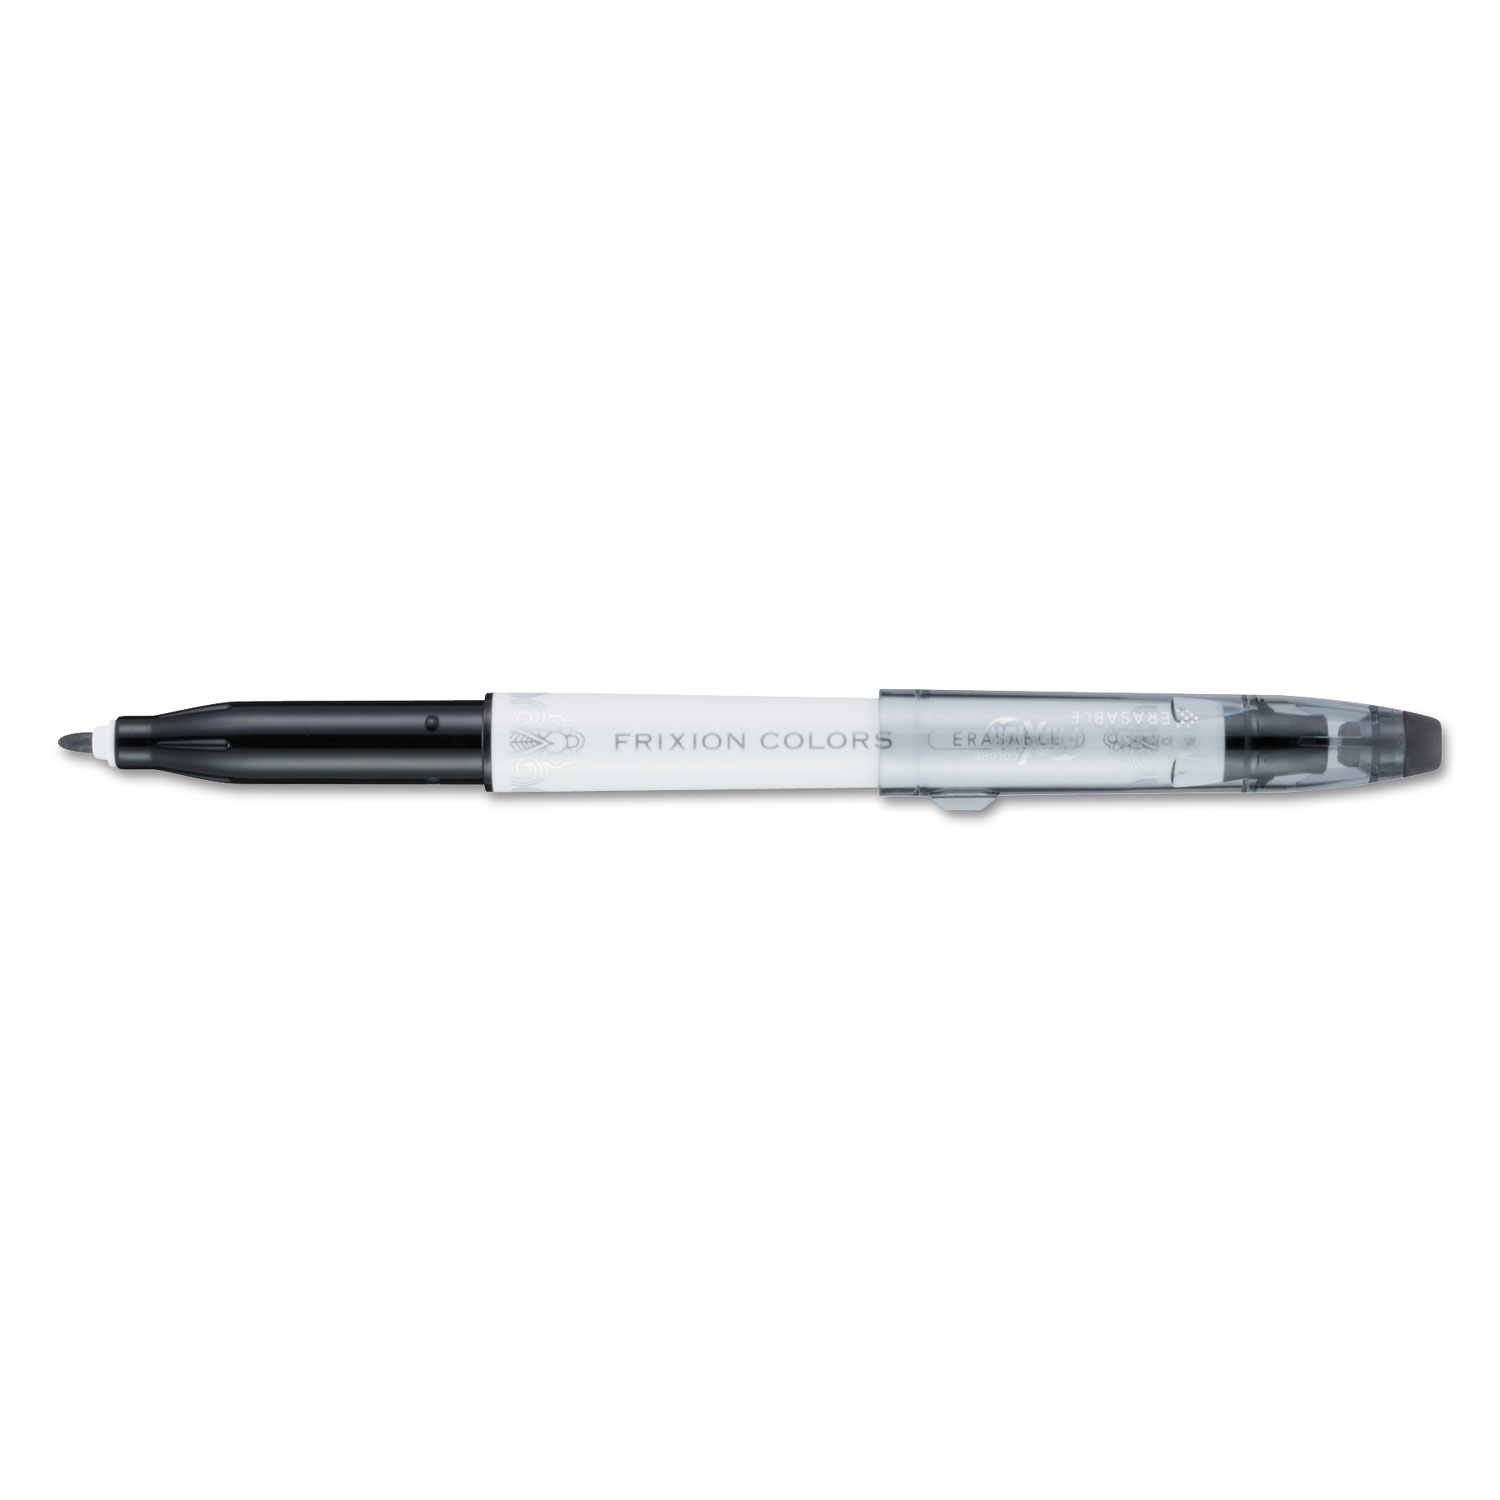  Pilot 41410 FriXion Colors Erasable Stick Marker Pen, 2.5mm, Black Ink, White Barrel (PIL41410) 